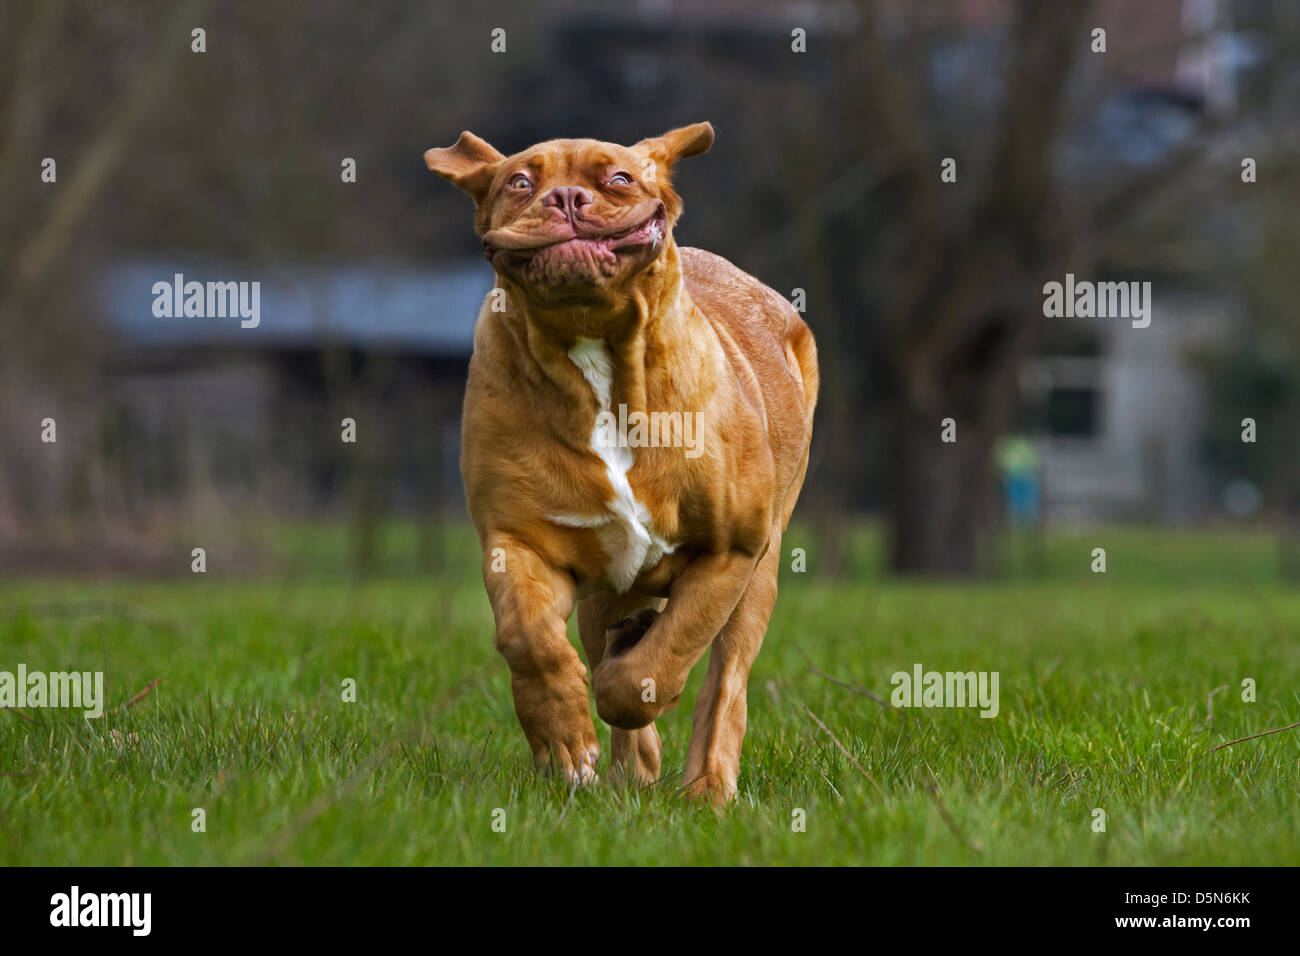 Dogo de Burdeos / Francés / Bordeauxdog mastín, perro corriendo en el jardín tirando funny faces Foto de stock